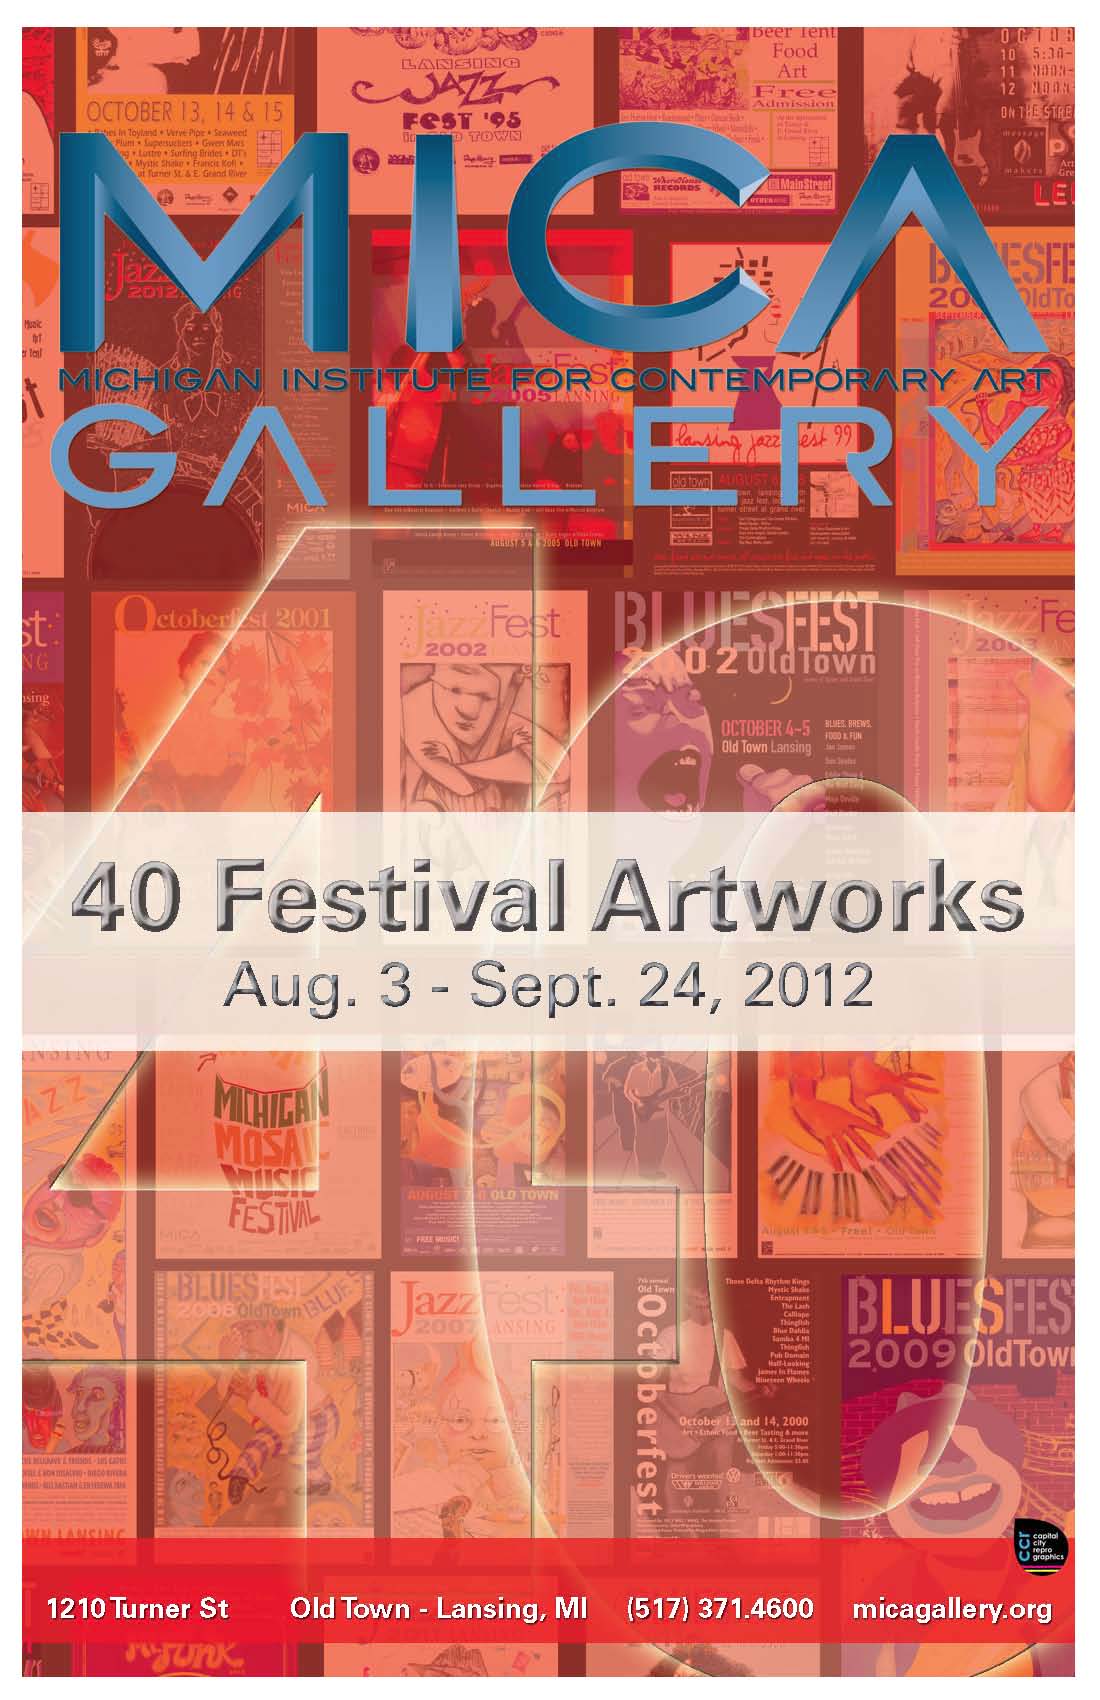 August-September: 40 Festival Artworks